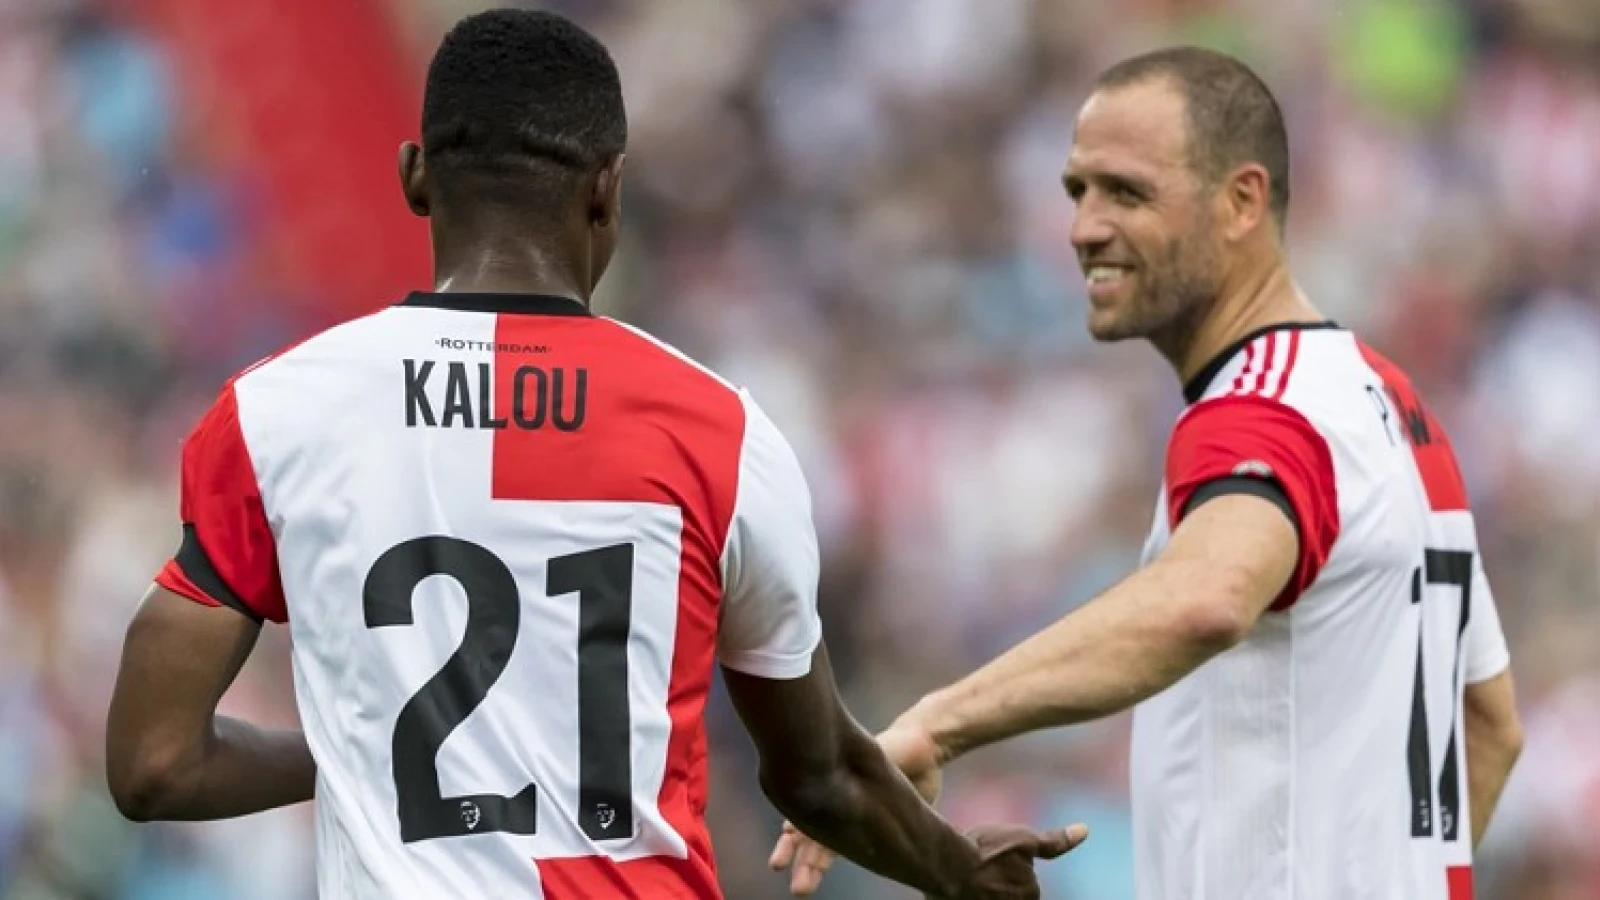 Uit de oude doos: 'Kalou wijst Feyenoord de weg tegen Heracles'